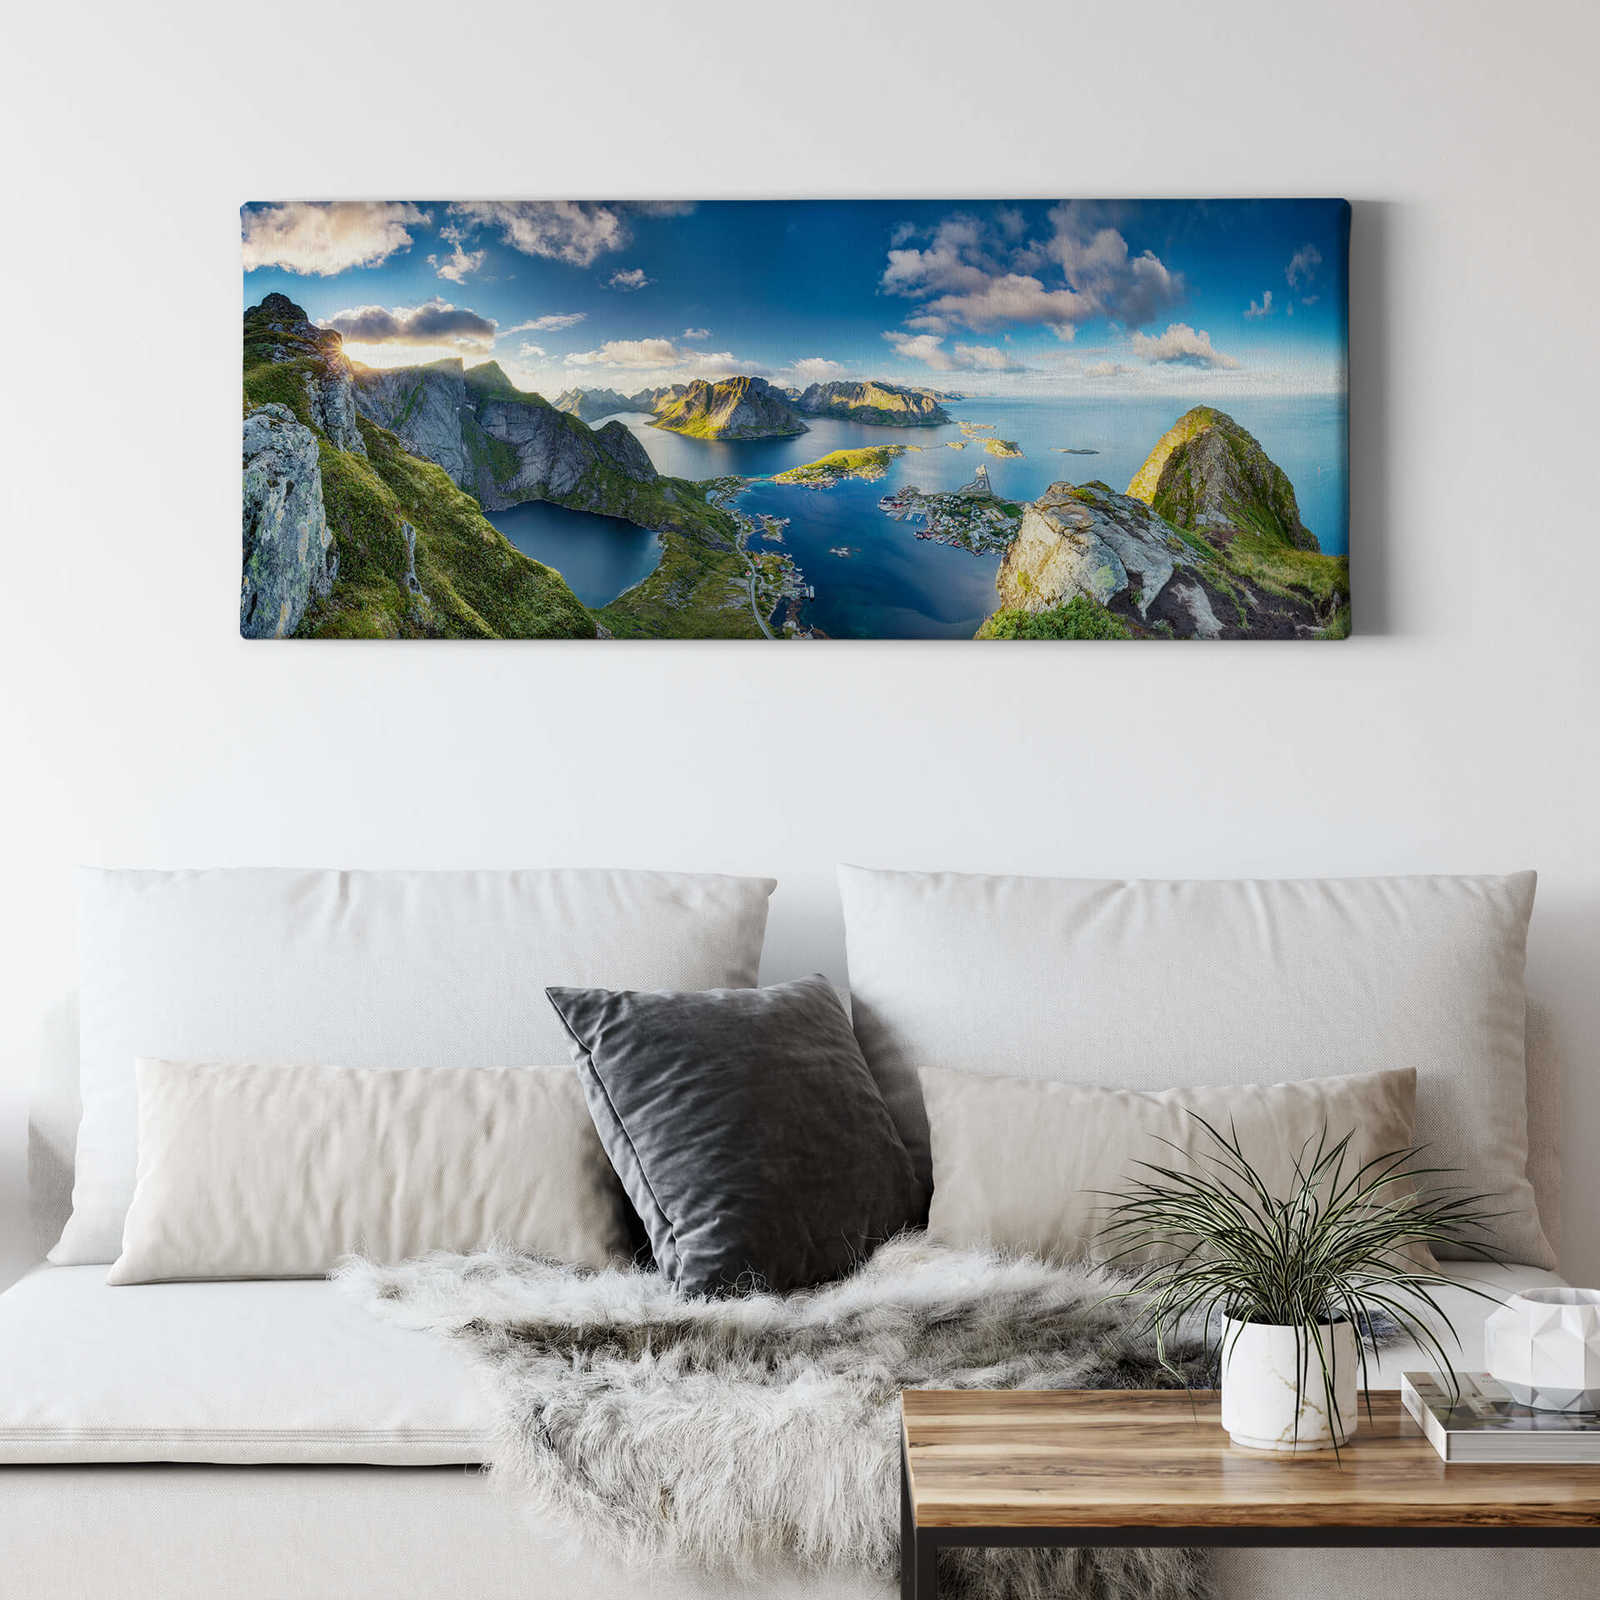             Canvas schilderij van Noorwegen in de zomer - 1.00 m x 0.40 m
        